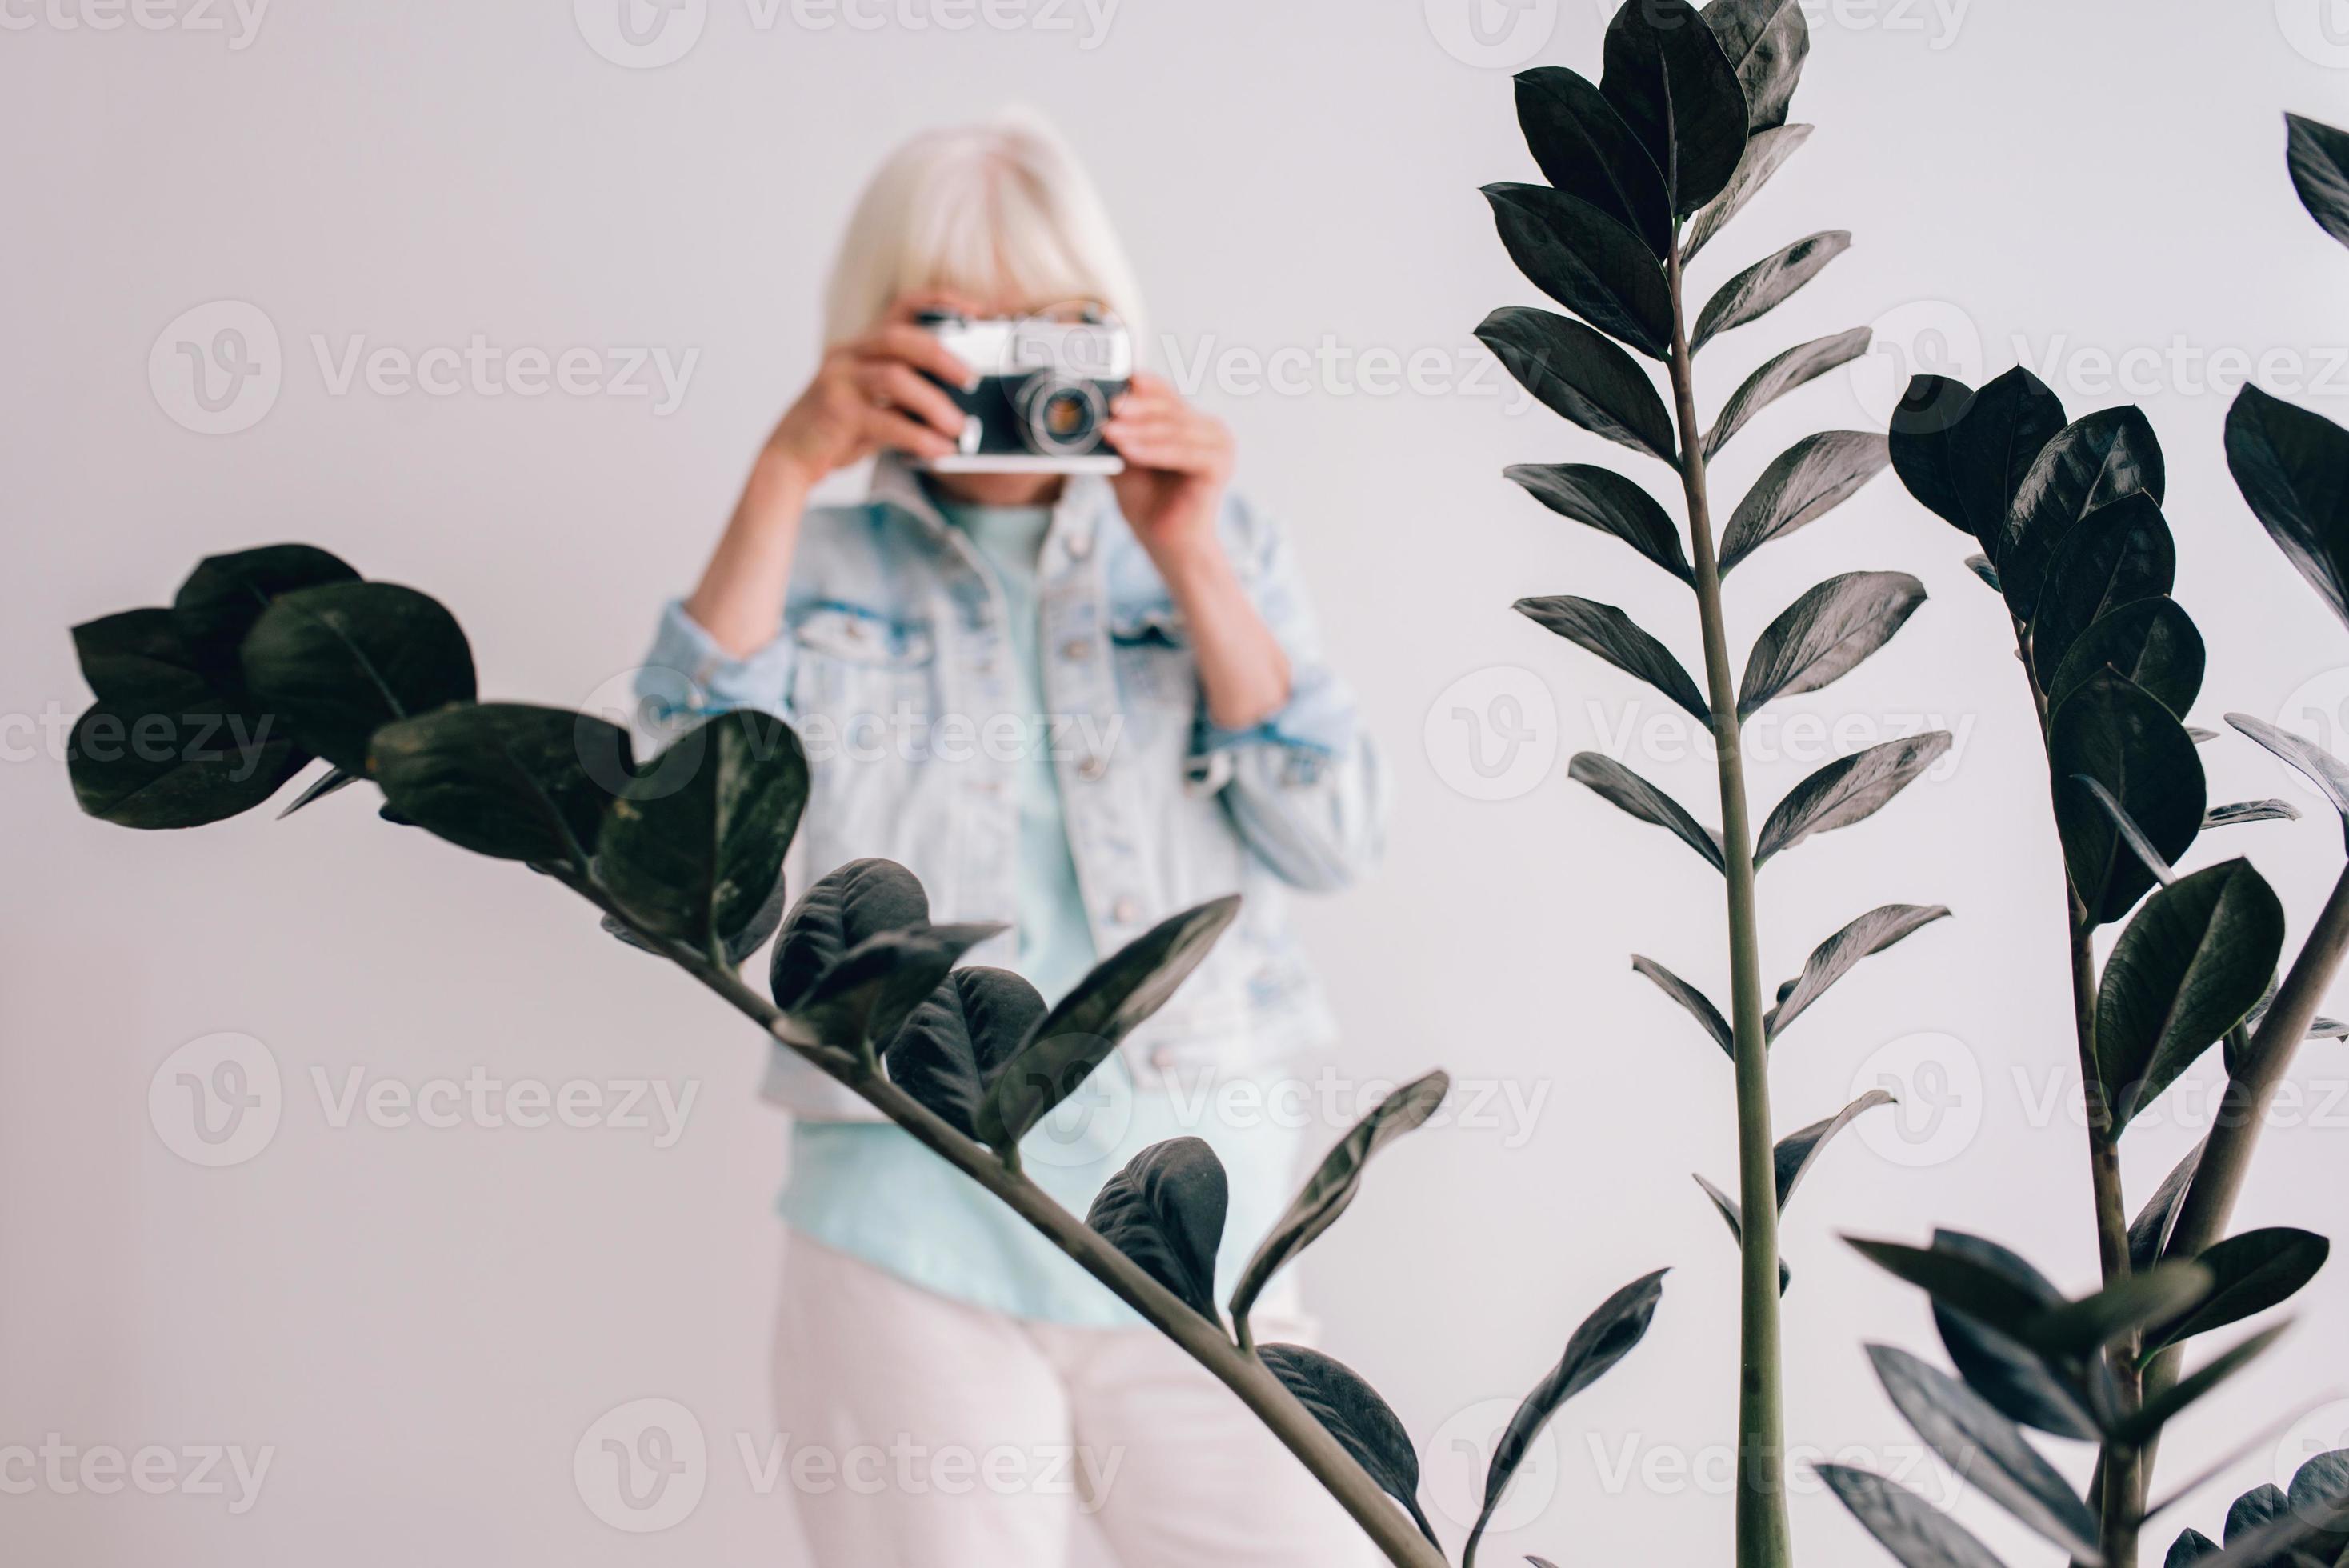 mulher elegante sênior com cabelos grisalhos e de óculos e jaqueta jeans, tirando fotos de flores com a câmera de filme. idade, hobby, anti-idade, vibrações positivas, conceito de fotografia